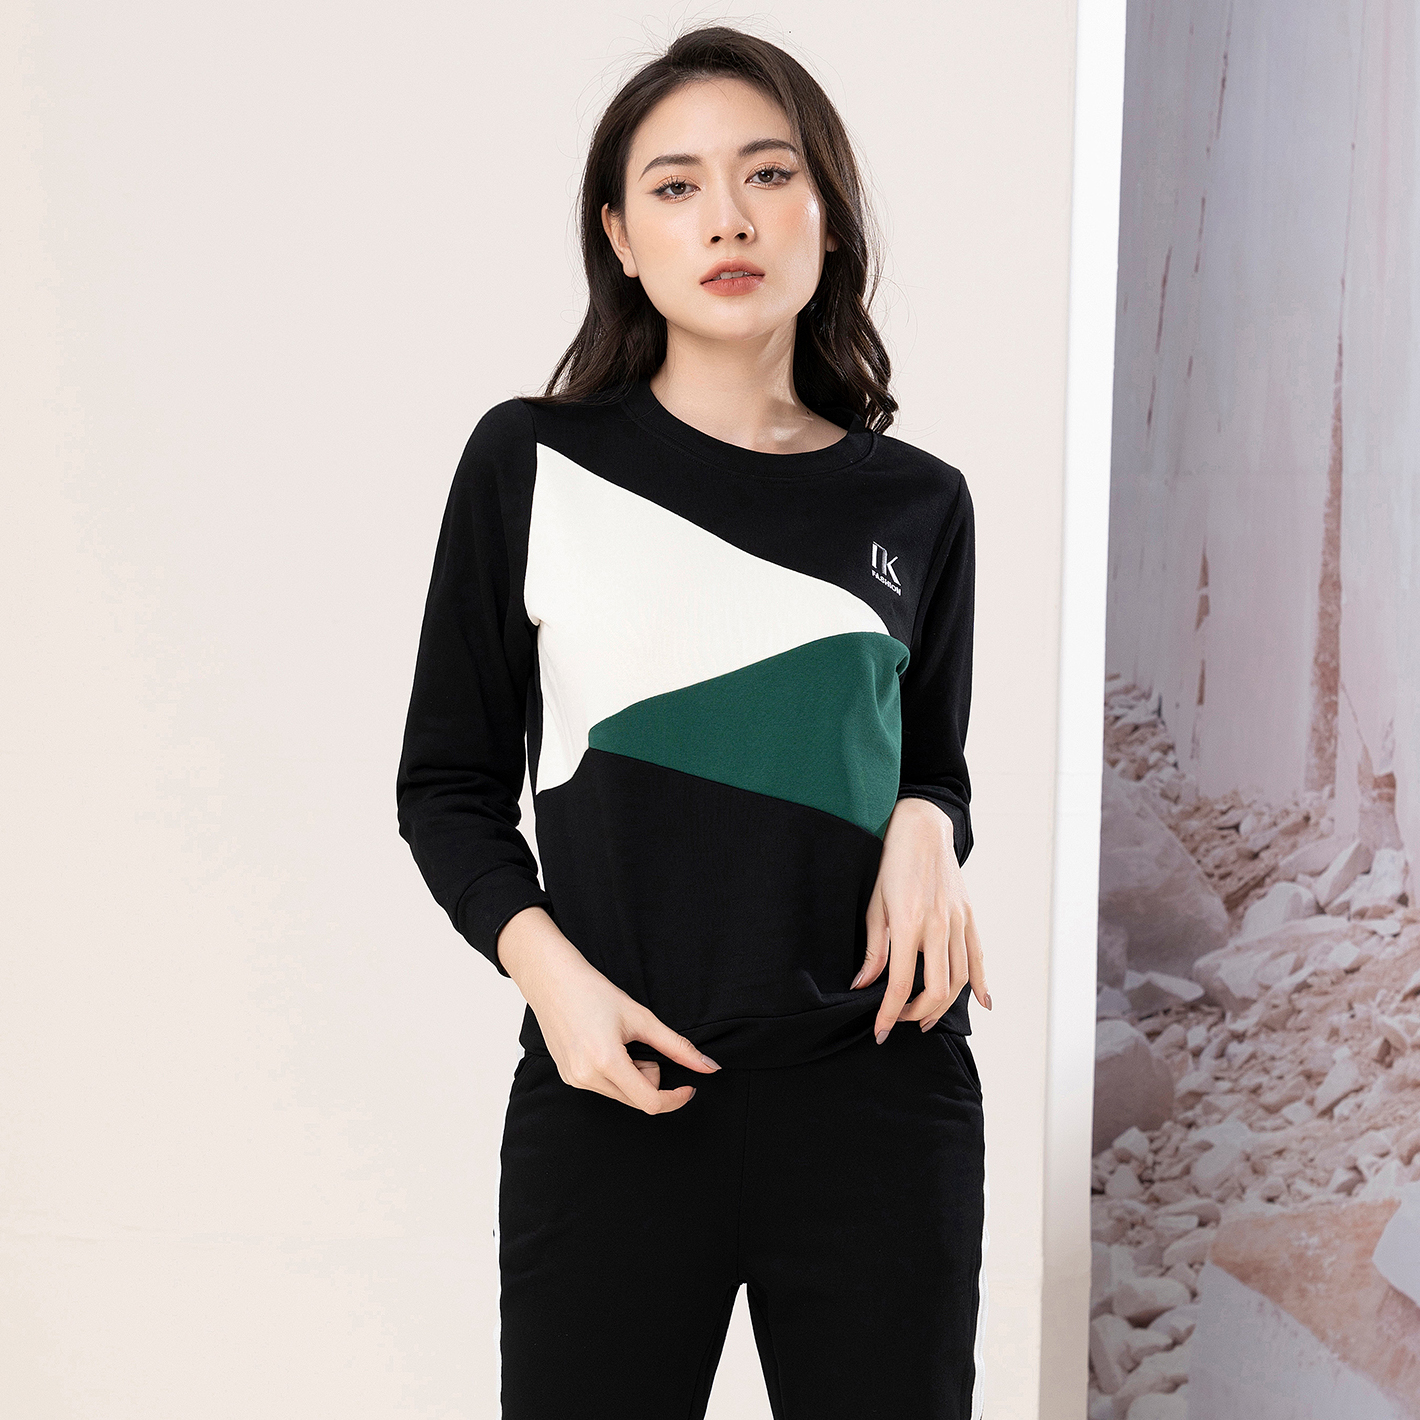 Bộ Đồ Nỉ Phối Tam Giác UK Fashion Vải Mềm Mịn nhập khẩu Phong Cách Hàn Quốc NKBD2210002 - M